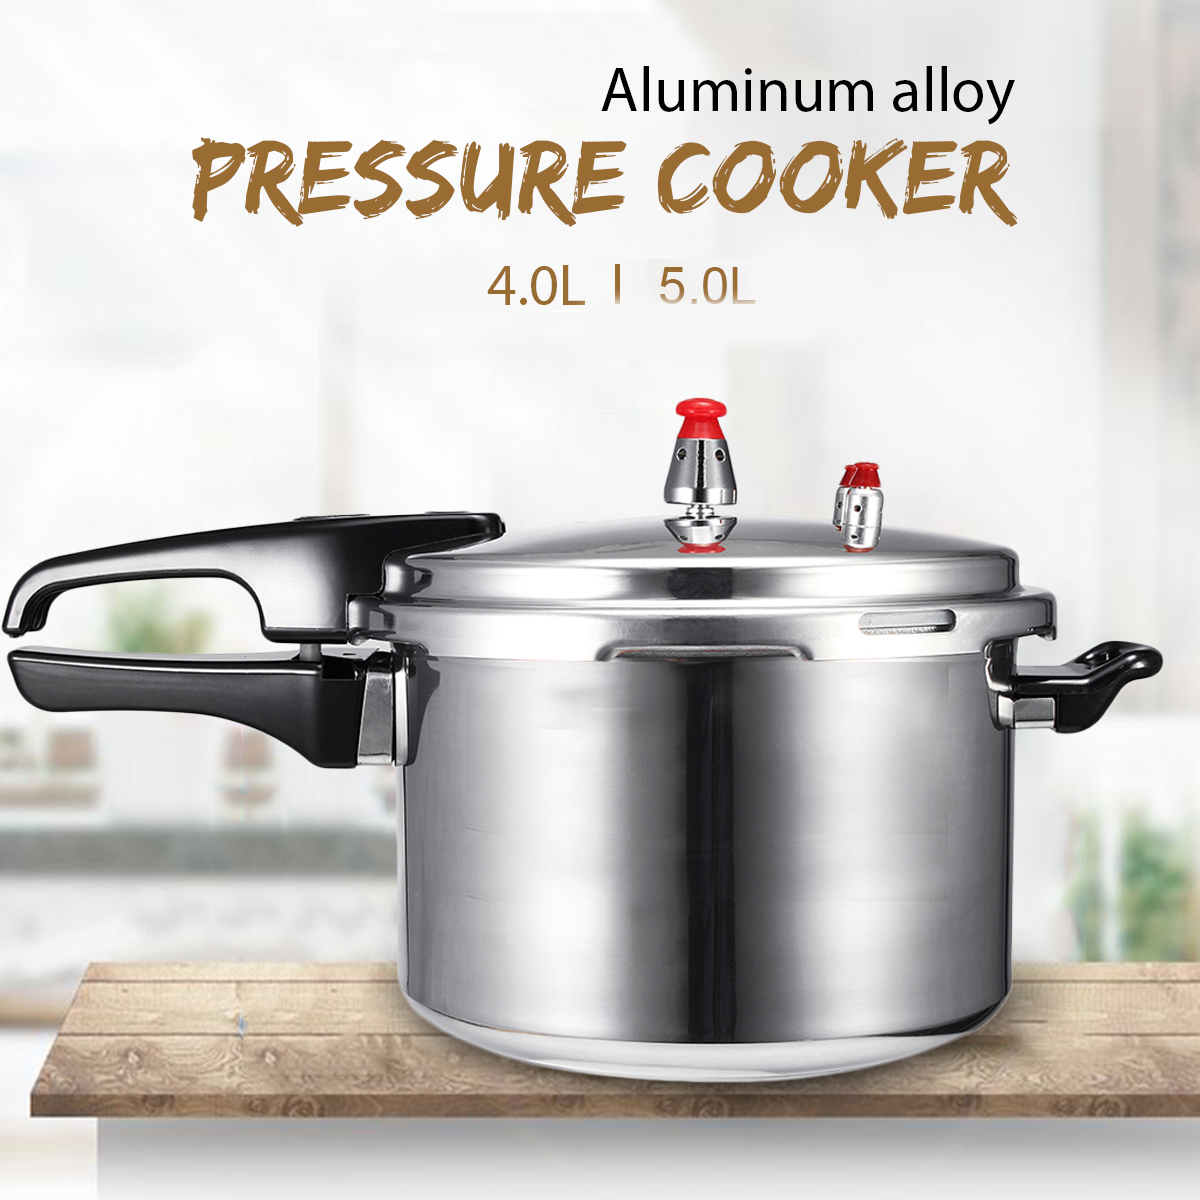 4L5L-Pressure-Cooker-Commercial-Aluminum-Alloy-Pressure-Cooker-1720053-1